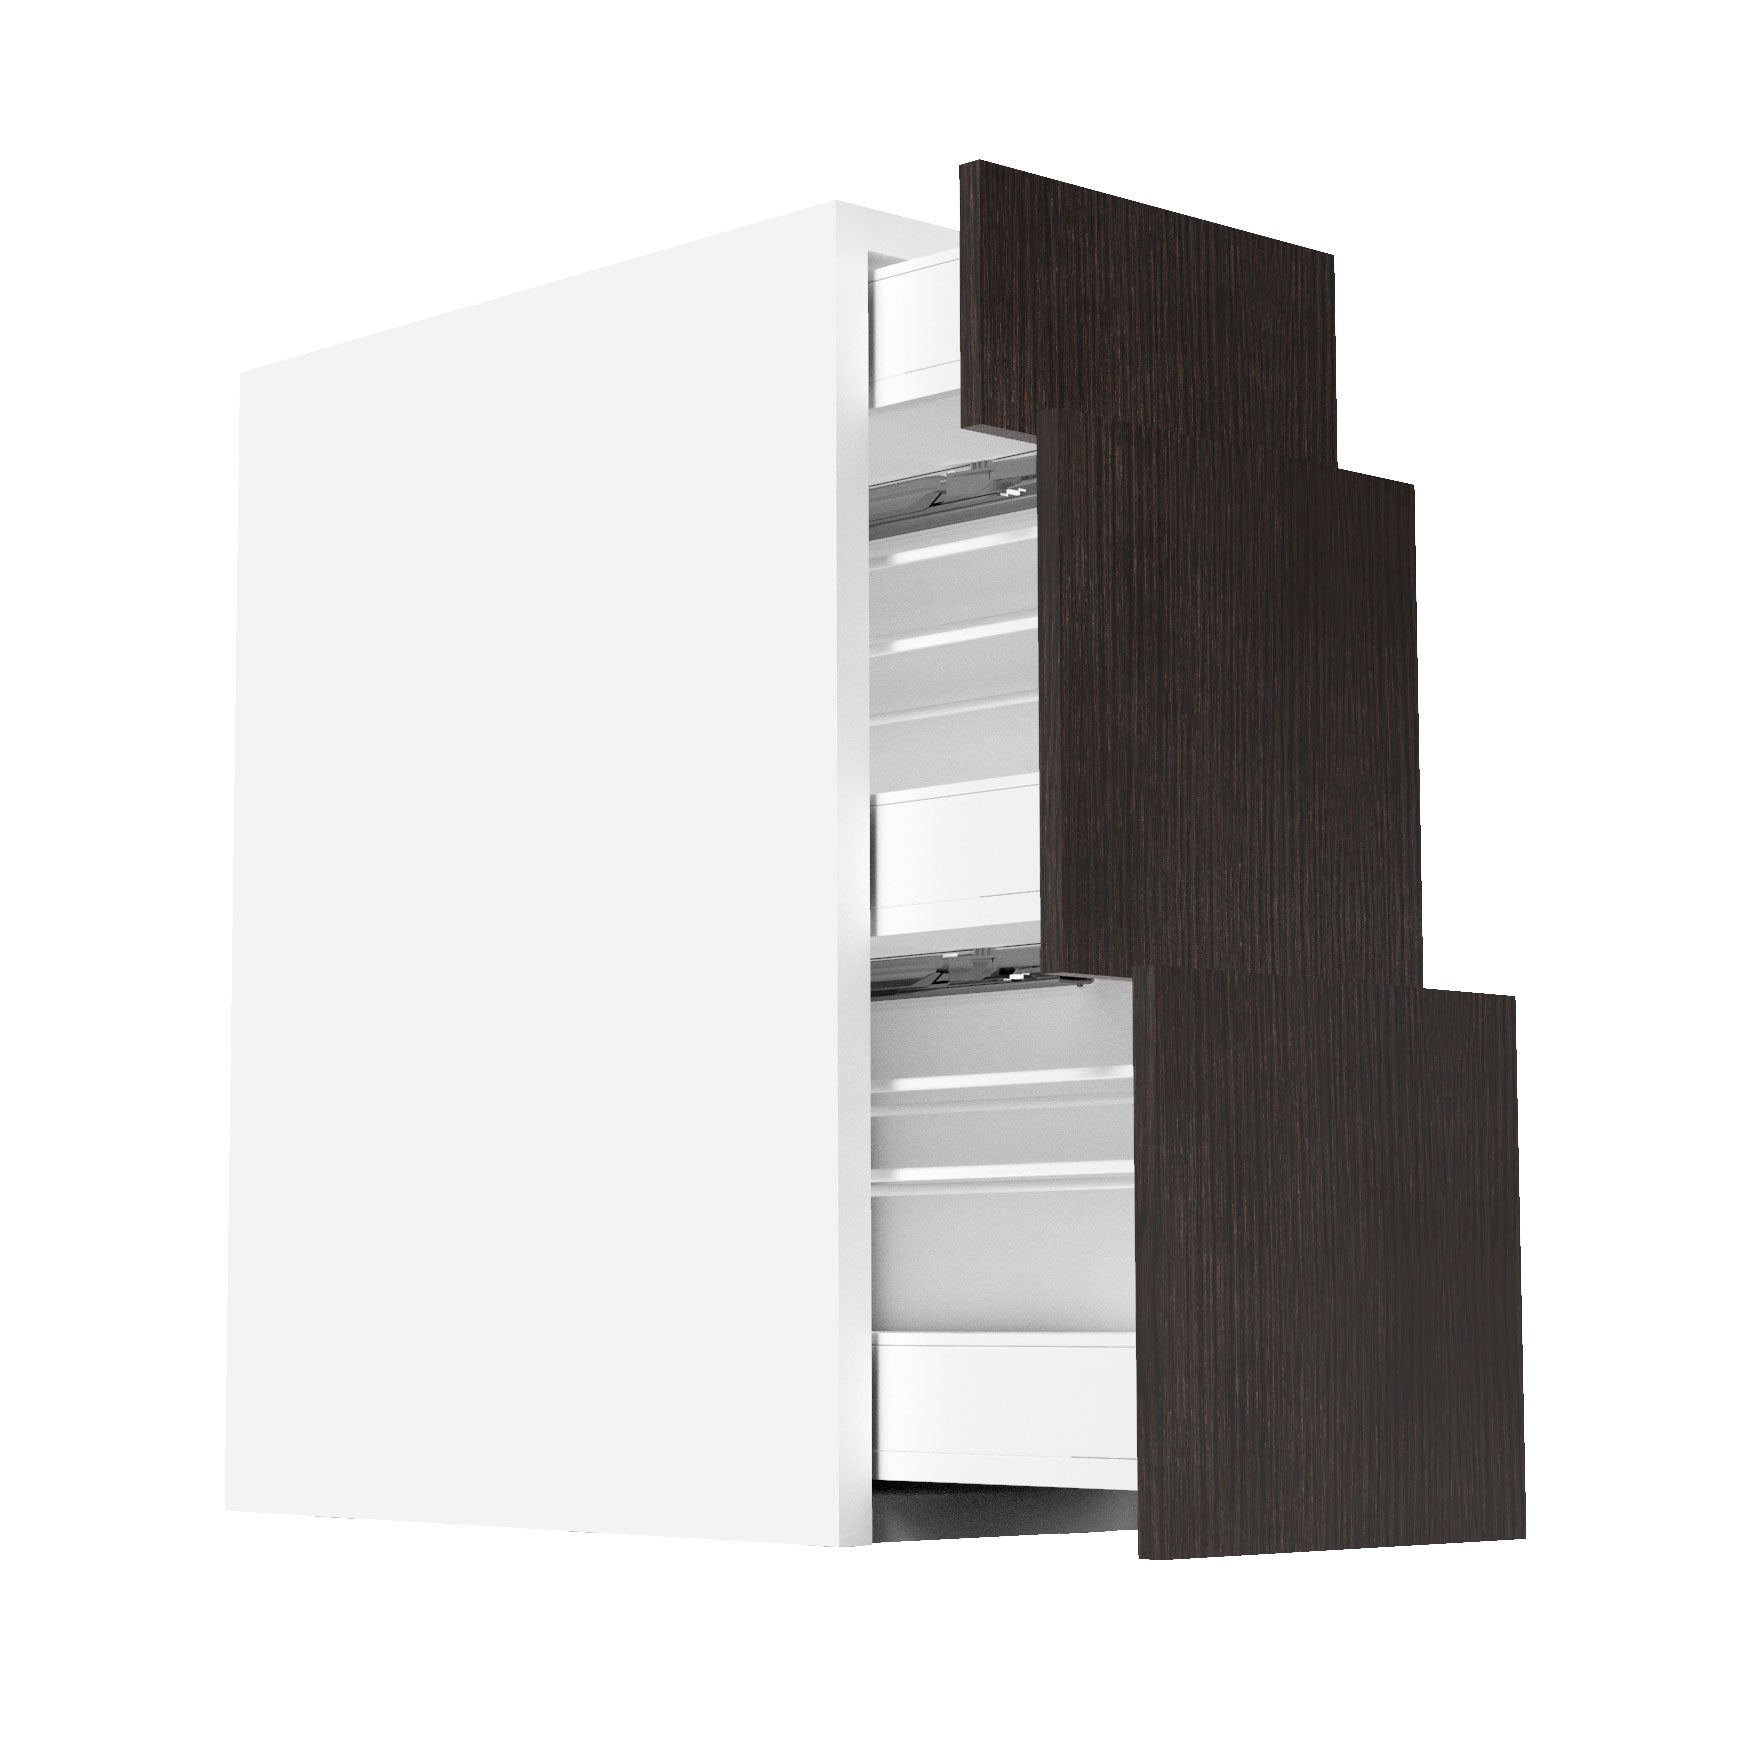 RTA - Brown Oak - Three Drawer Vanity Cabinets | 12"W x 30"H x 21"D